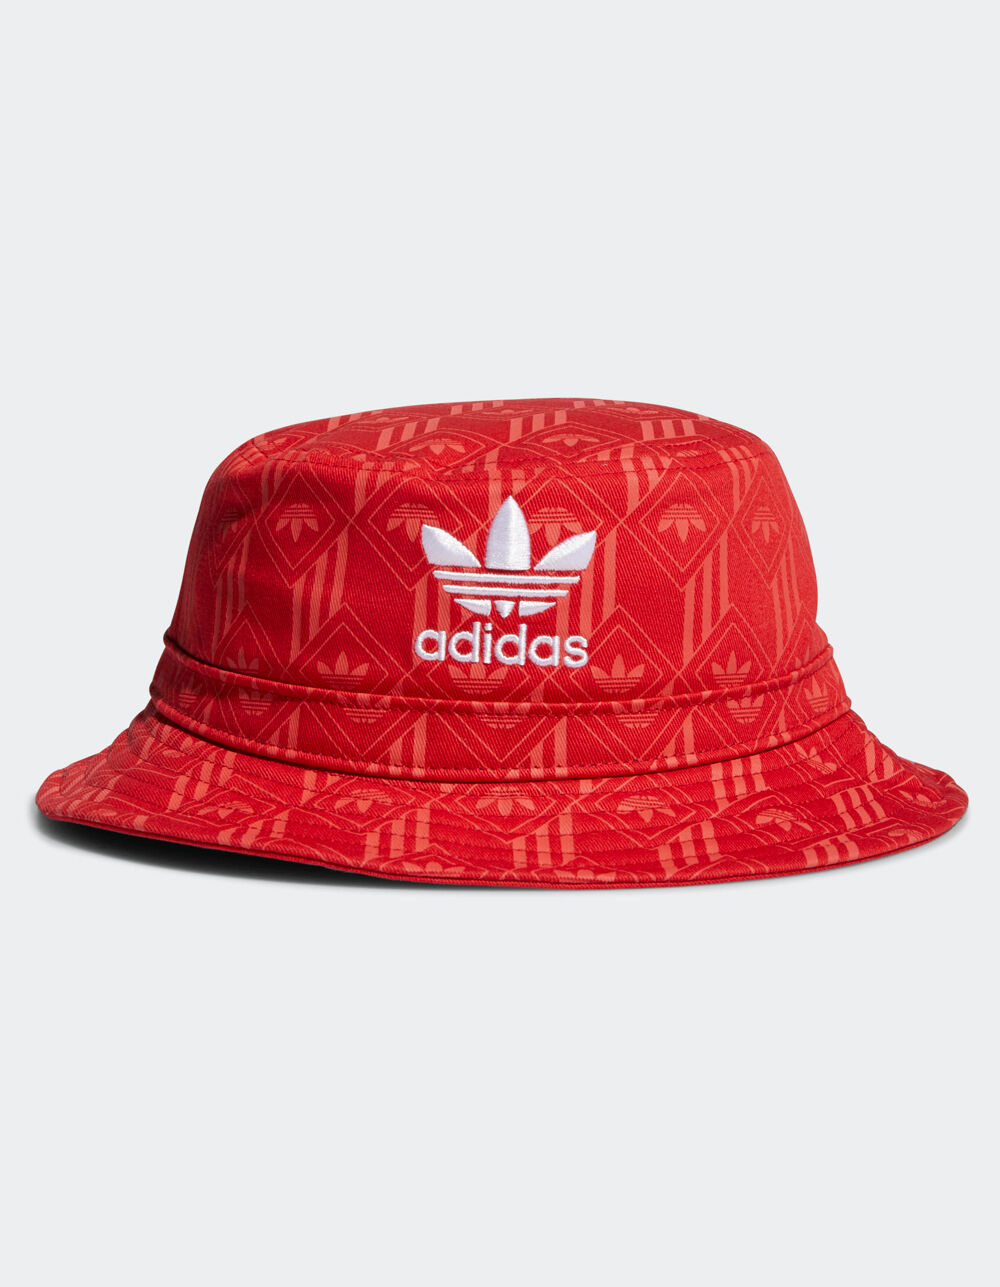 Hay una tendencia Alpinista Conexión ADIDAS Originals Adi Monogram Mens Red Bucket Hat - RED | Tillys